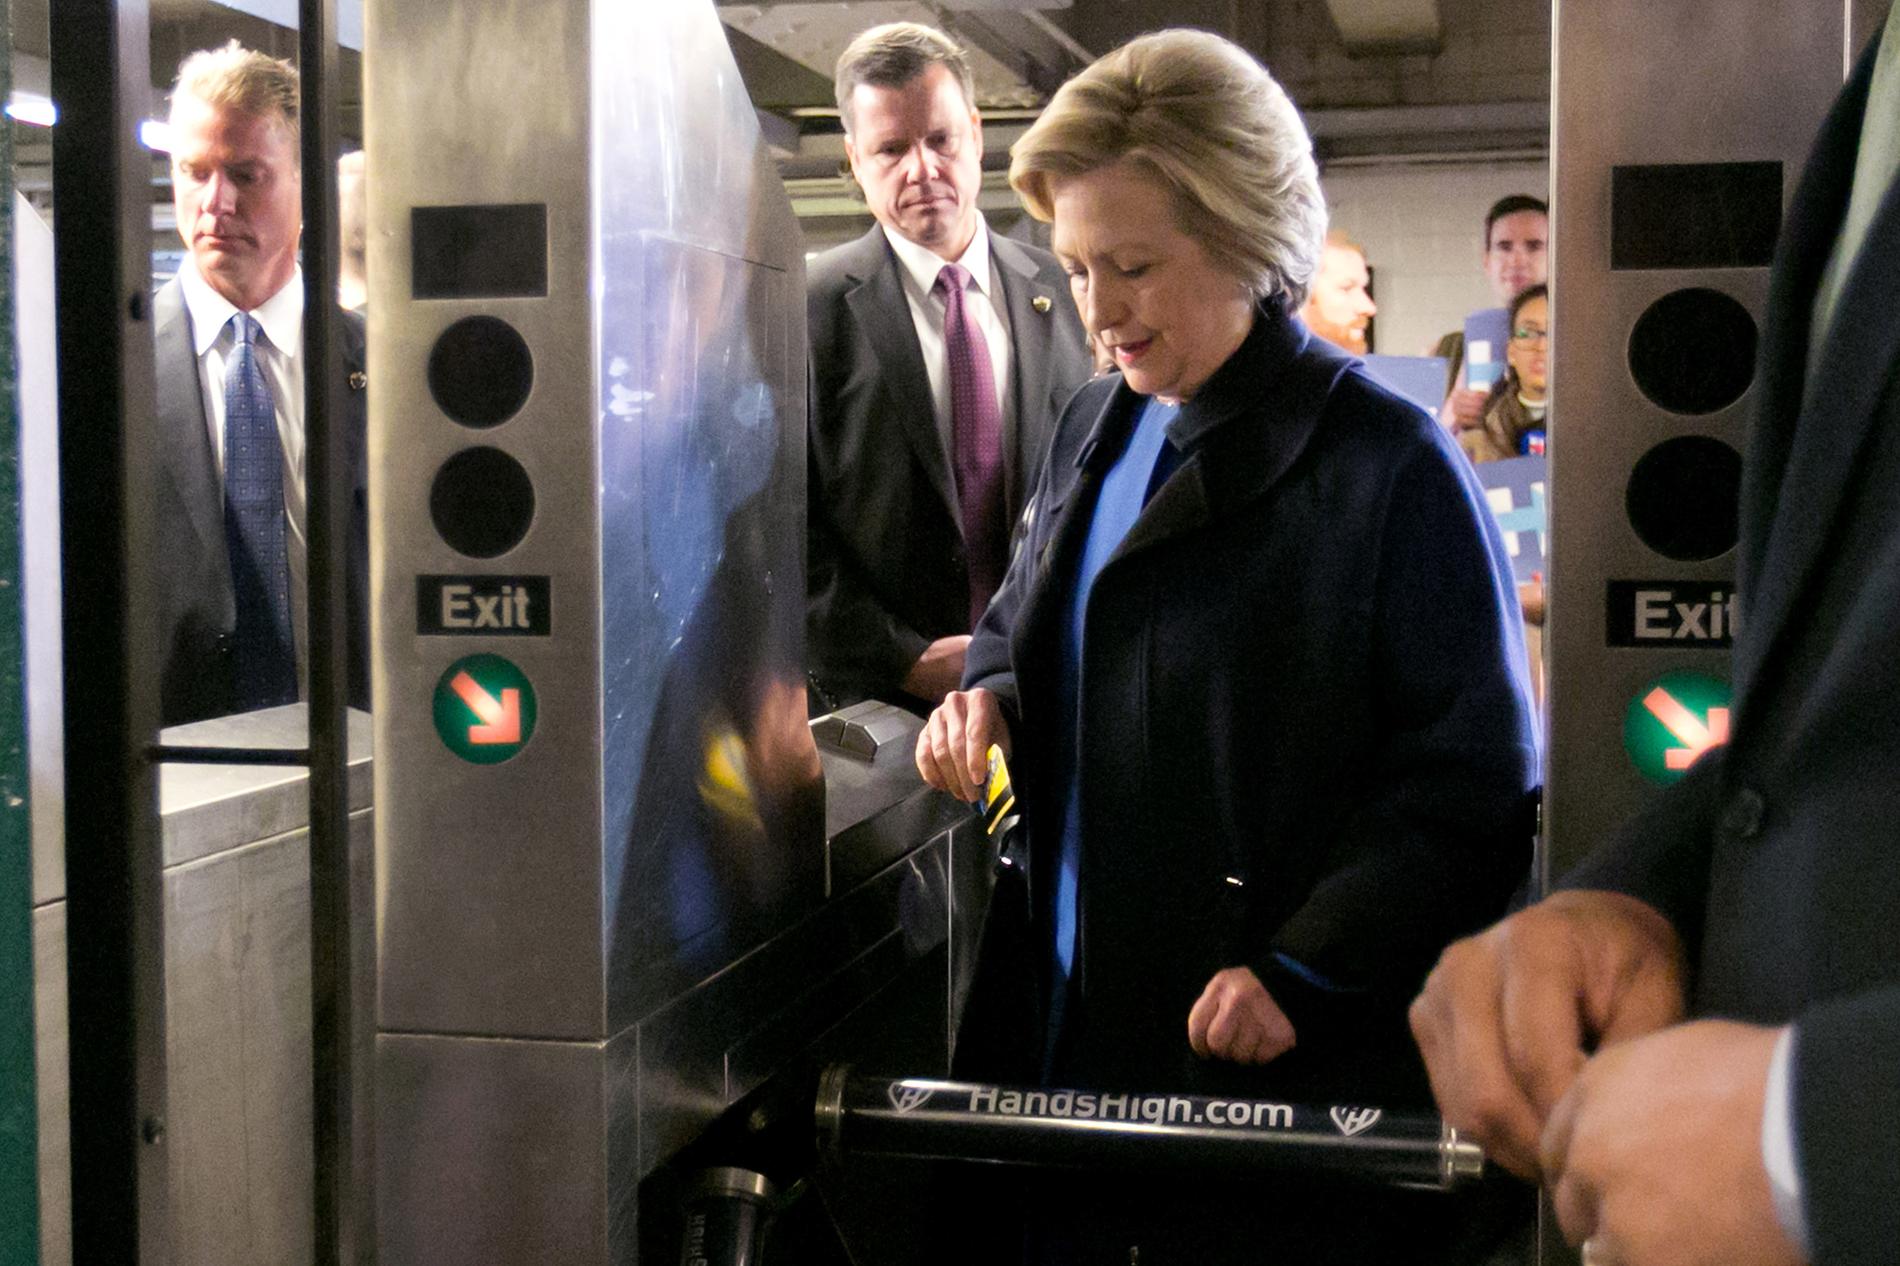 OVAN T-BANEÅKARE Det strulade rejält när Hillary Clinton skulle genom spärren i tunnelbanan. Något som New York-borna hade roligt åt.